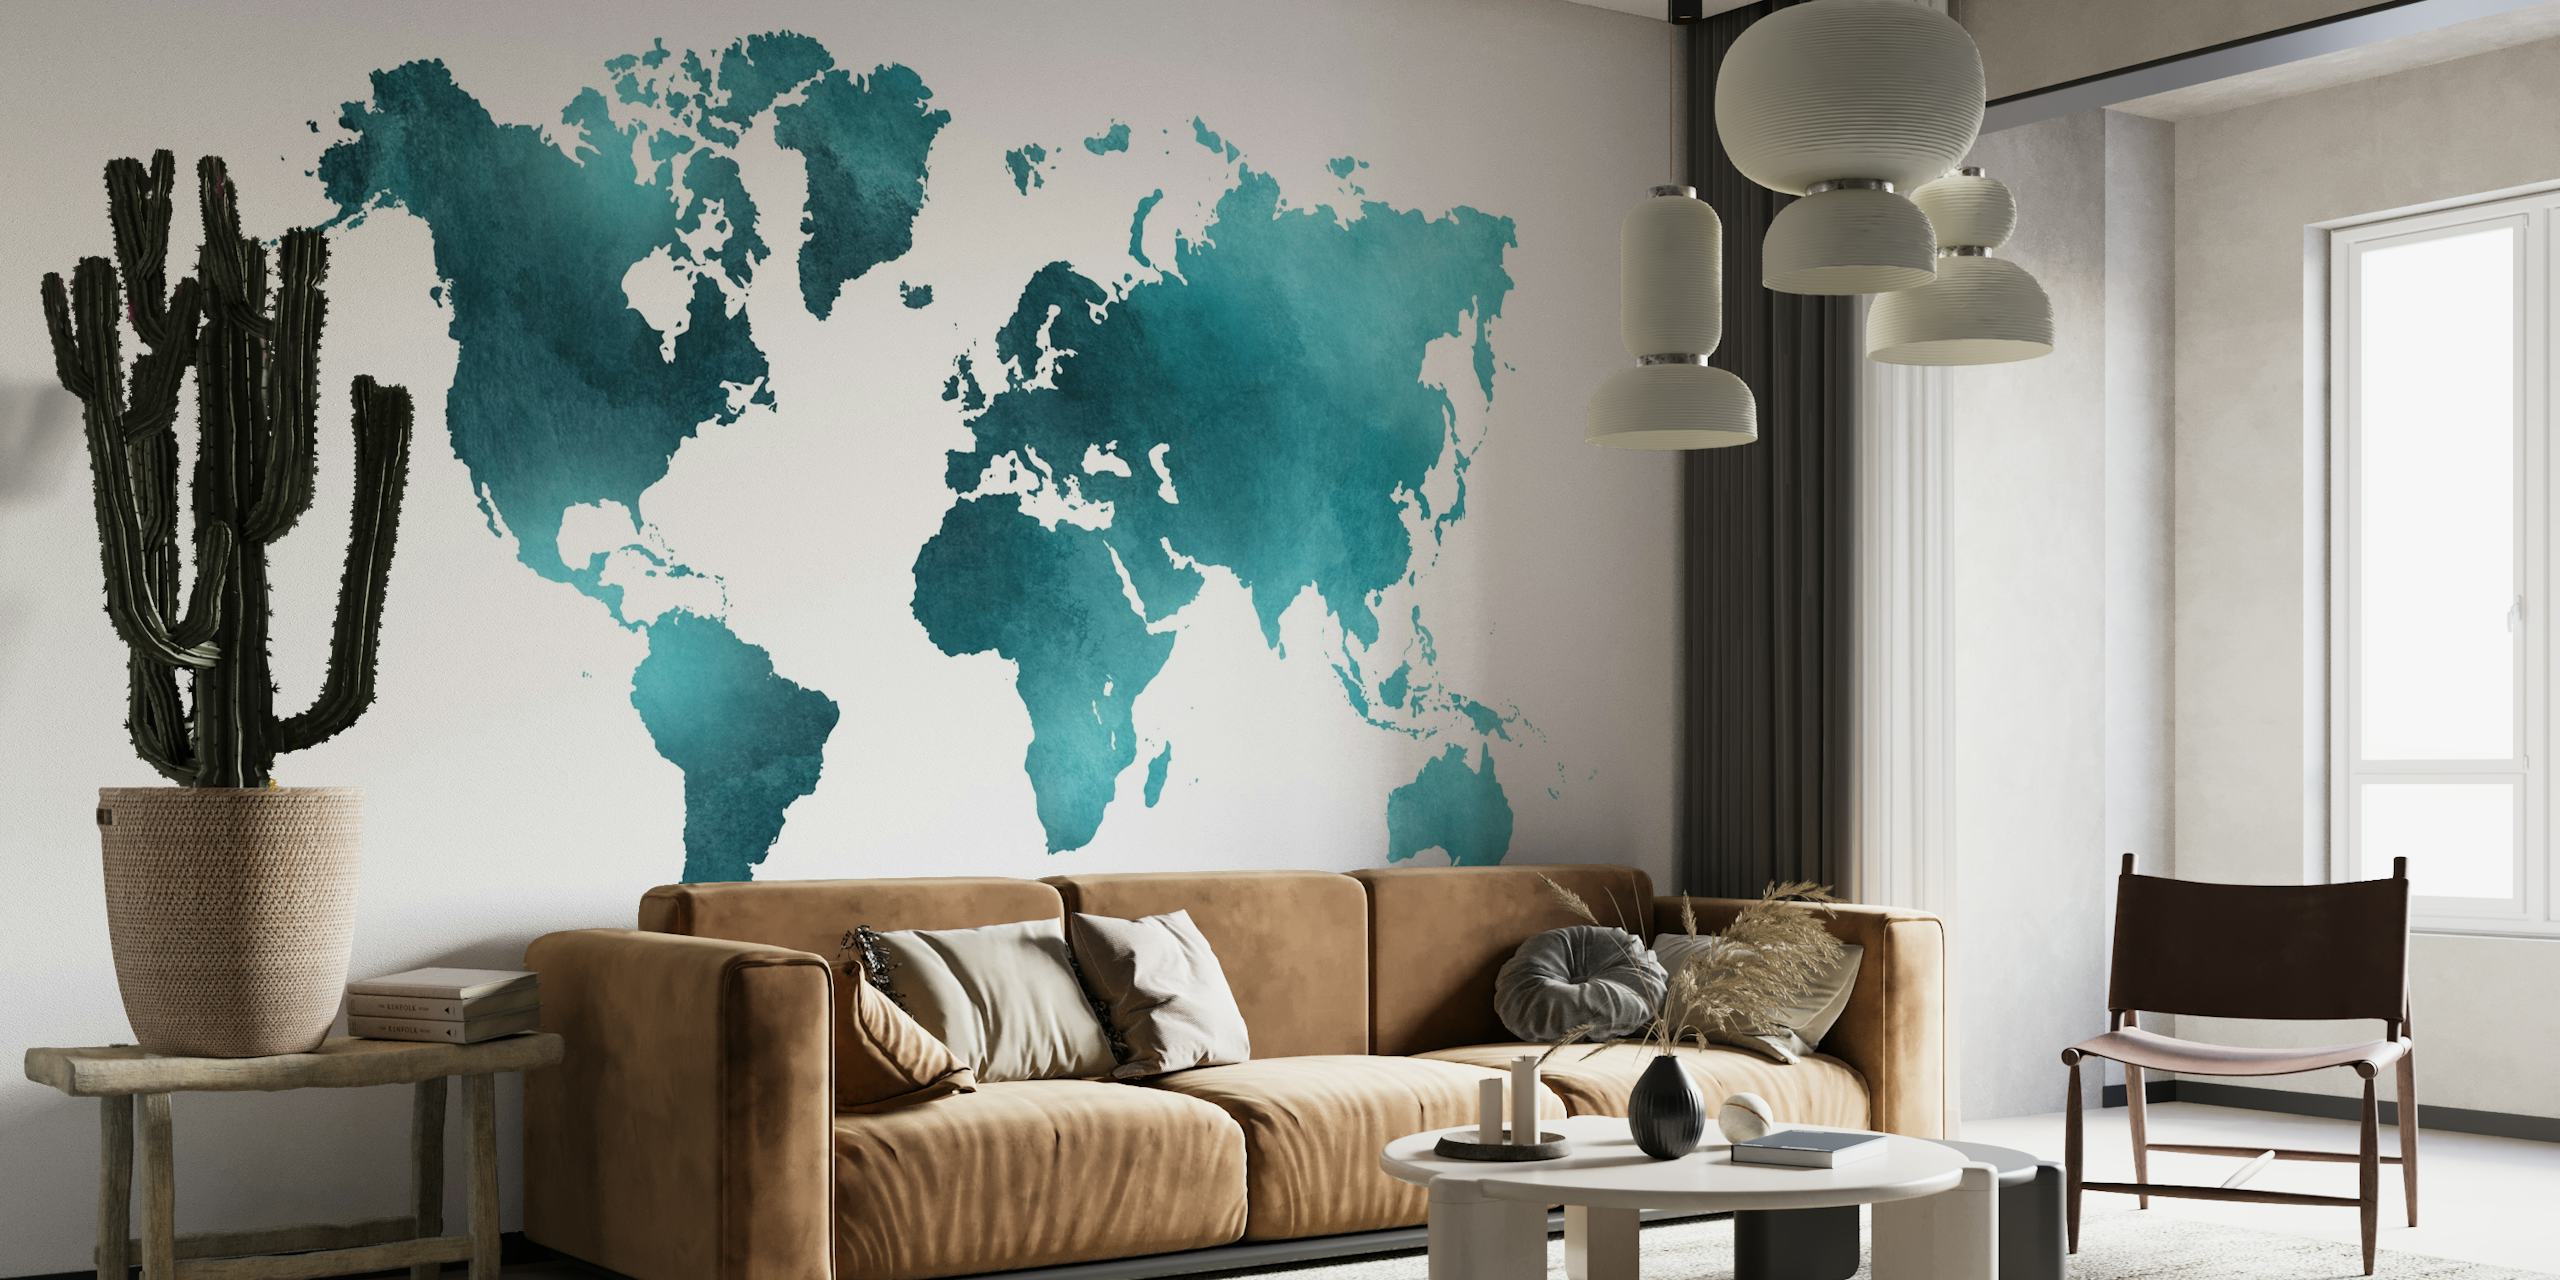 Blauwgroen en turquoise wereldkaart muurschildering